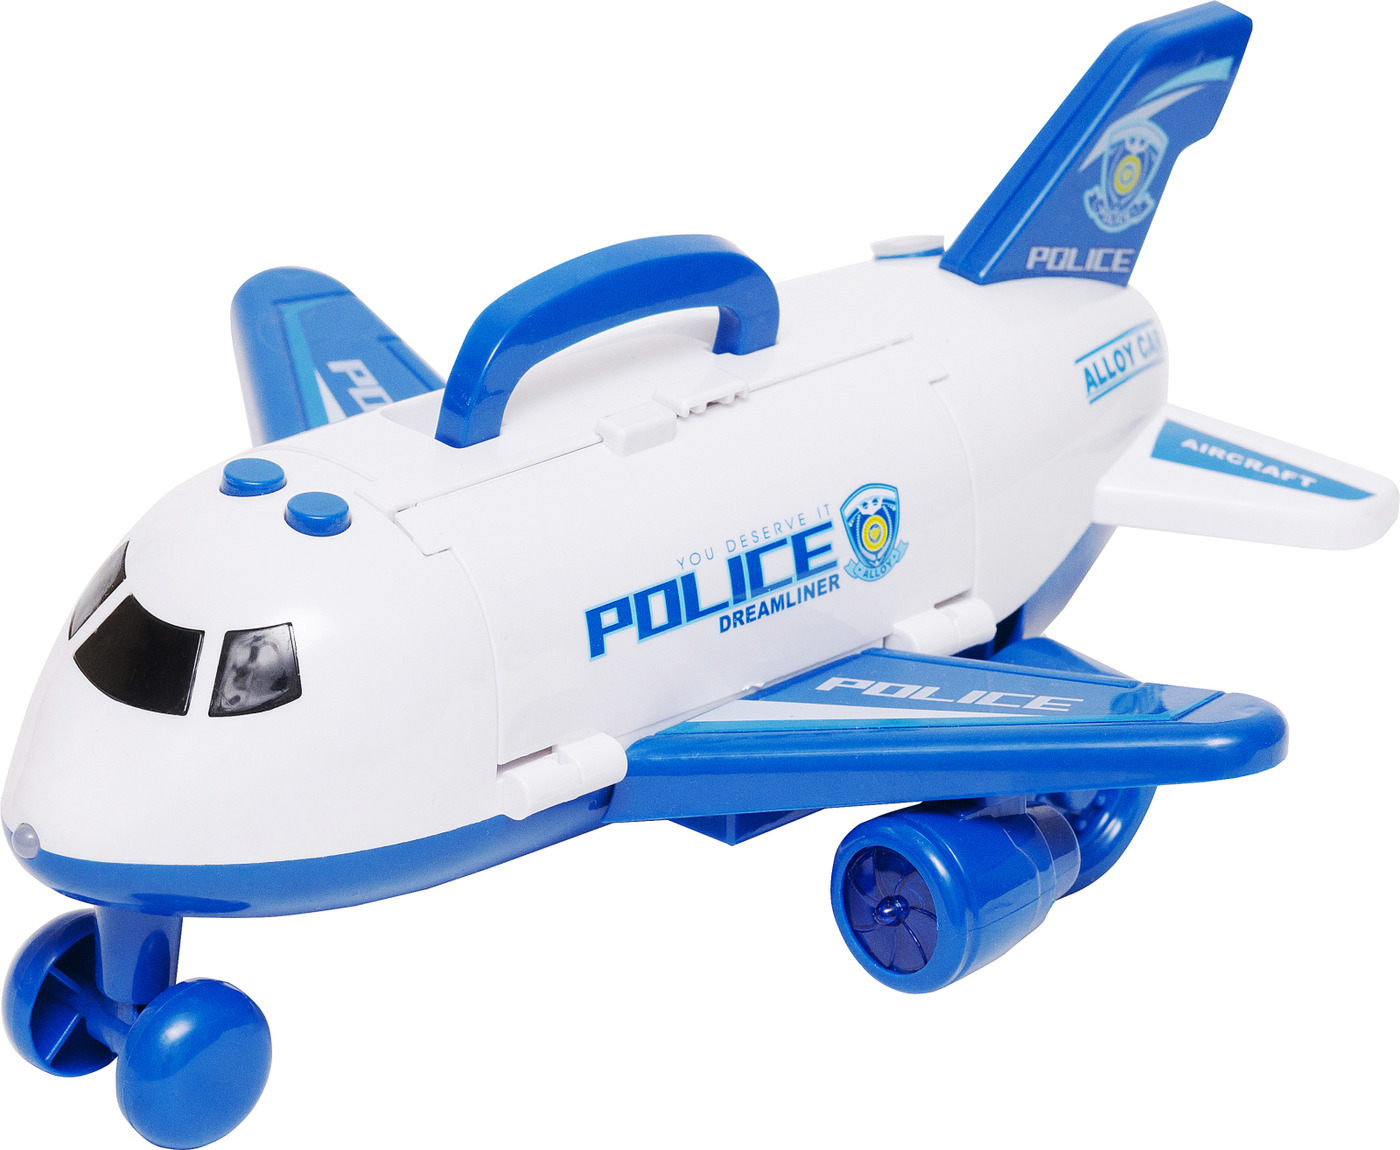 Грузовой самолет-парковка с машинками Six-Six-Zero «Police» 660-A279 / пар, свет, звук